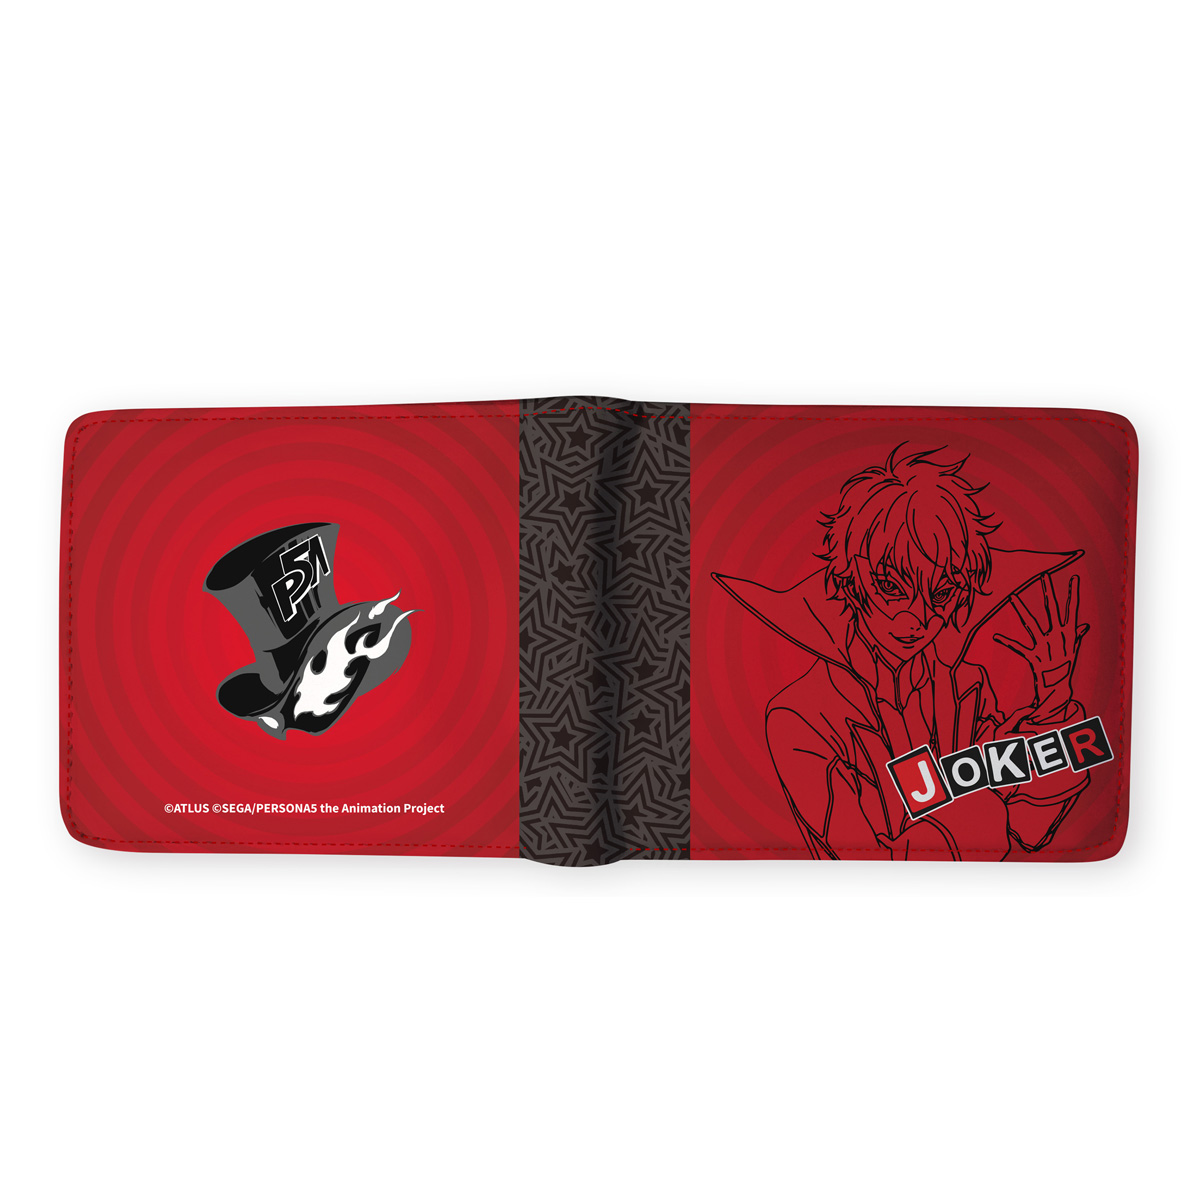 Joker Persona 5 Wallet image count 2